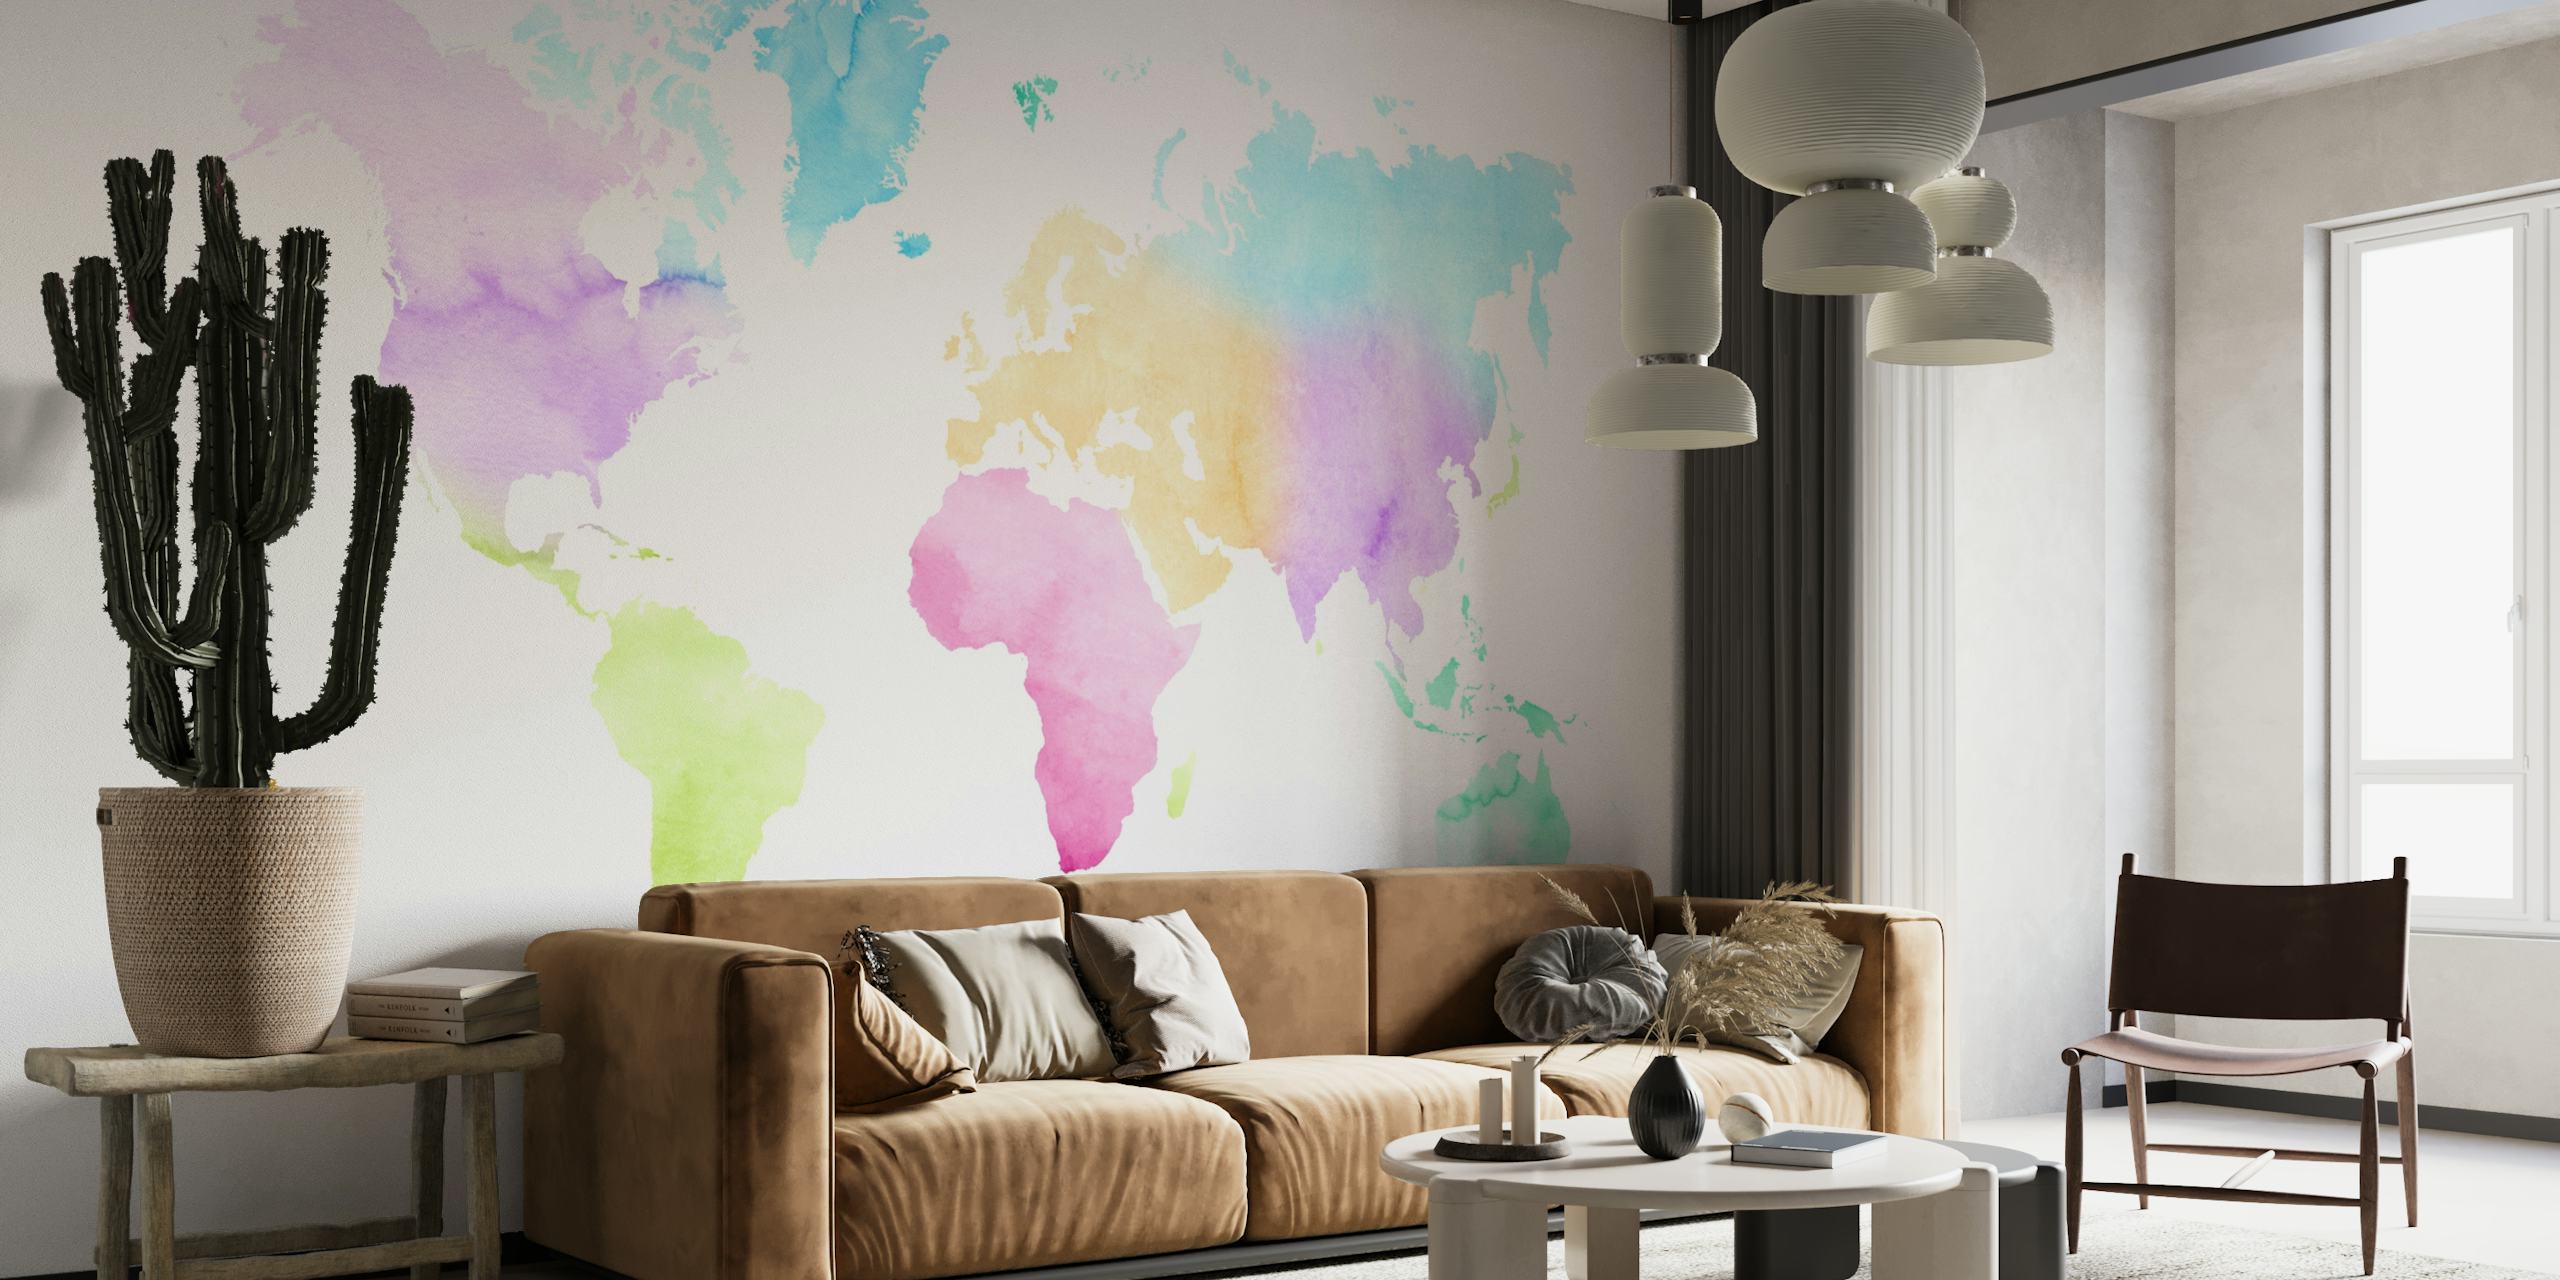 Rappresentazione colorata ad acquerello di una mappa del mondo per la decorazione murale